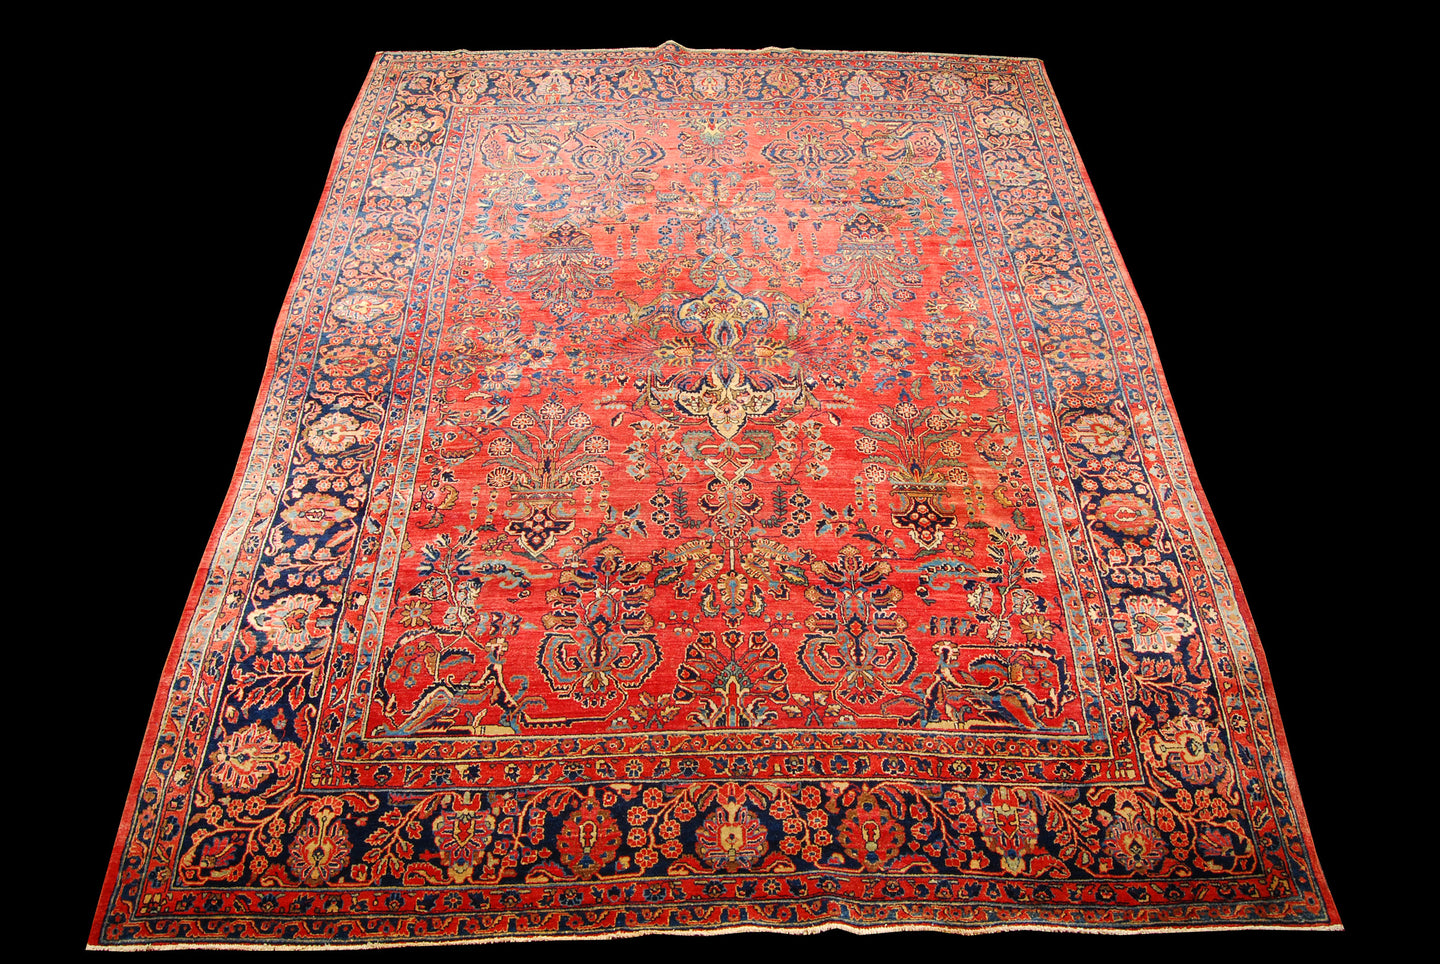 Ancient Antique Original Hand Made Carpets Tapis Teppich CM 340x270